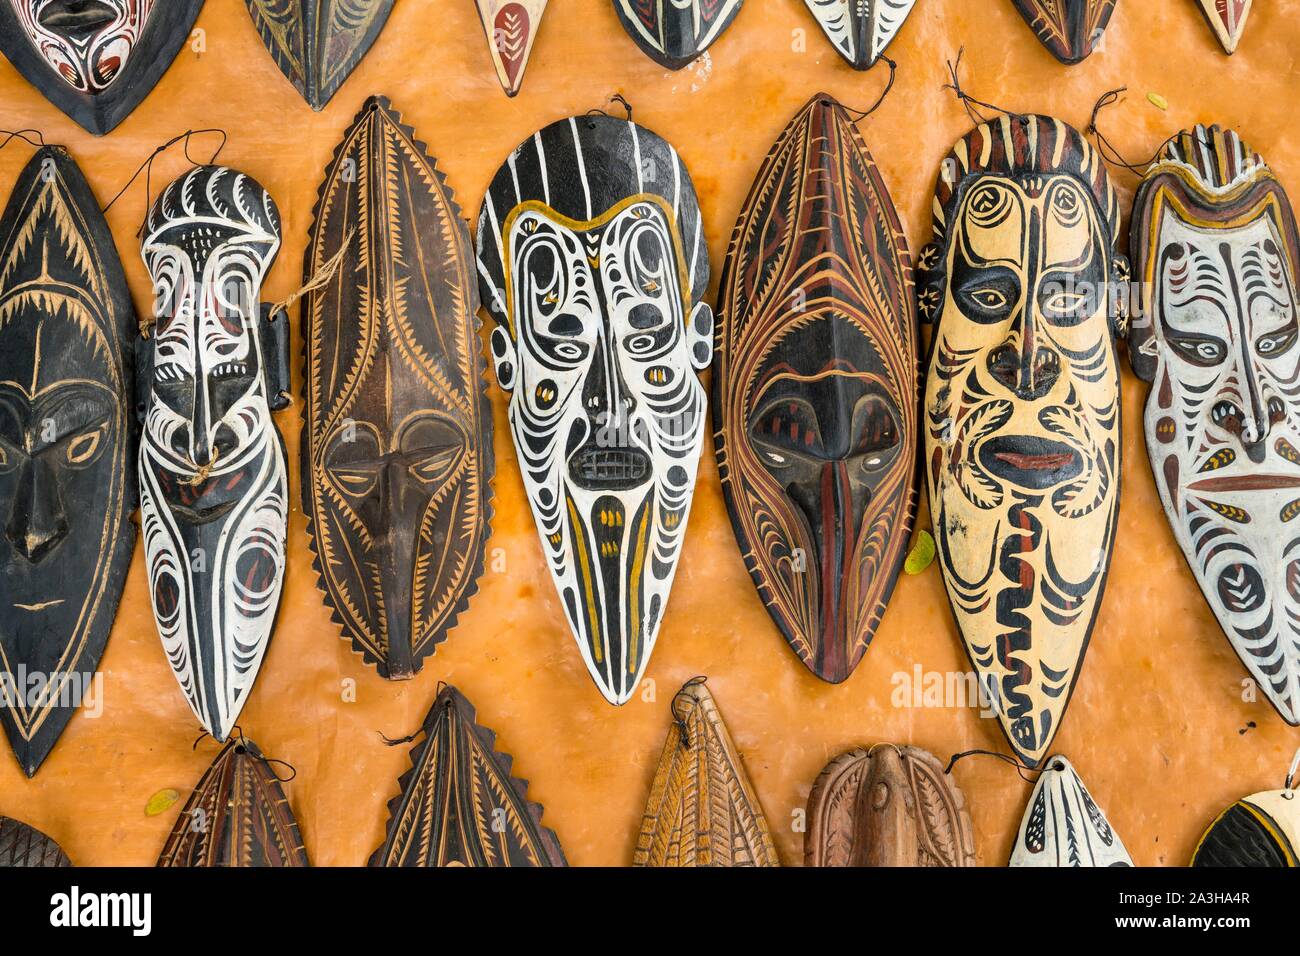 - Papua-New Guinea, National Capital District, Port Moresby, Waigani Bezirk, Port Moresby Theater, monatlich Handwerkermarkt, Masken für verkaufen Stockfoto